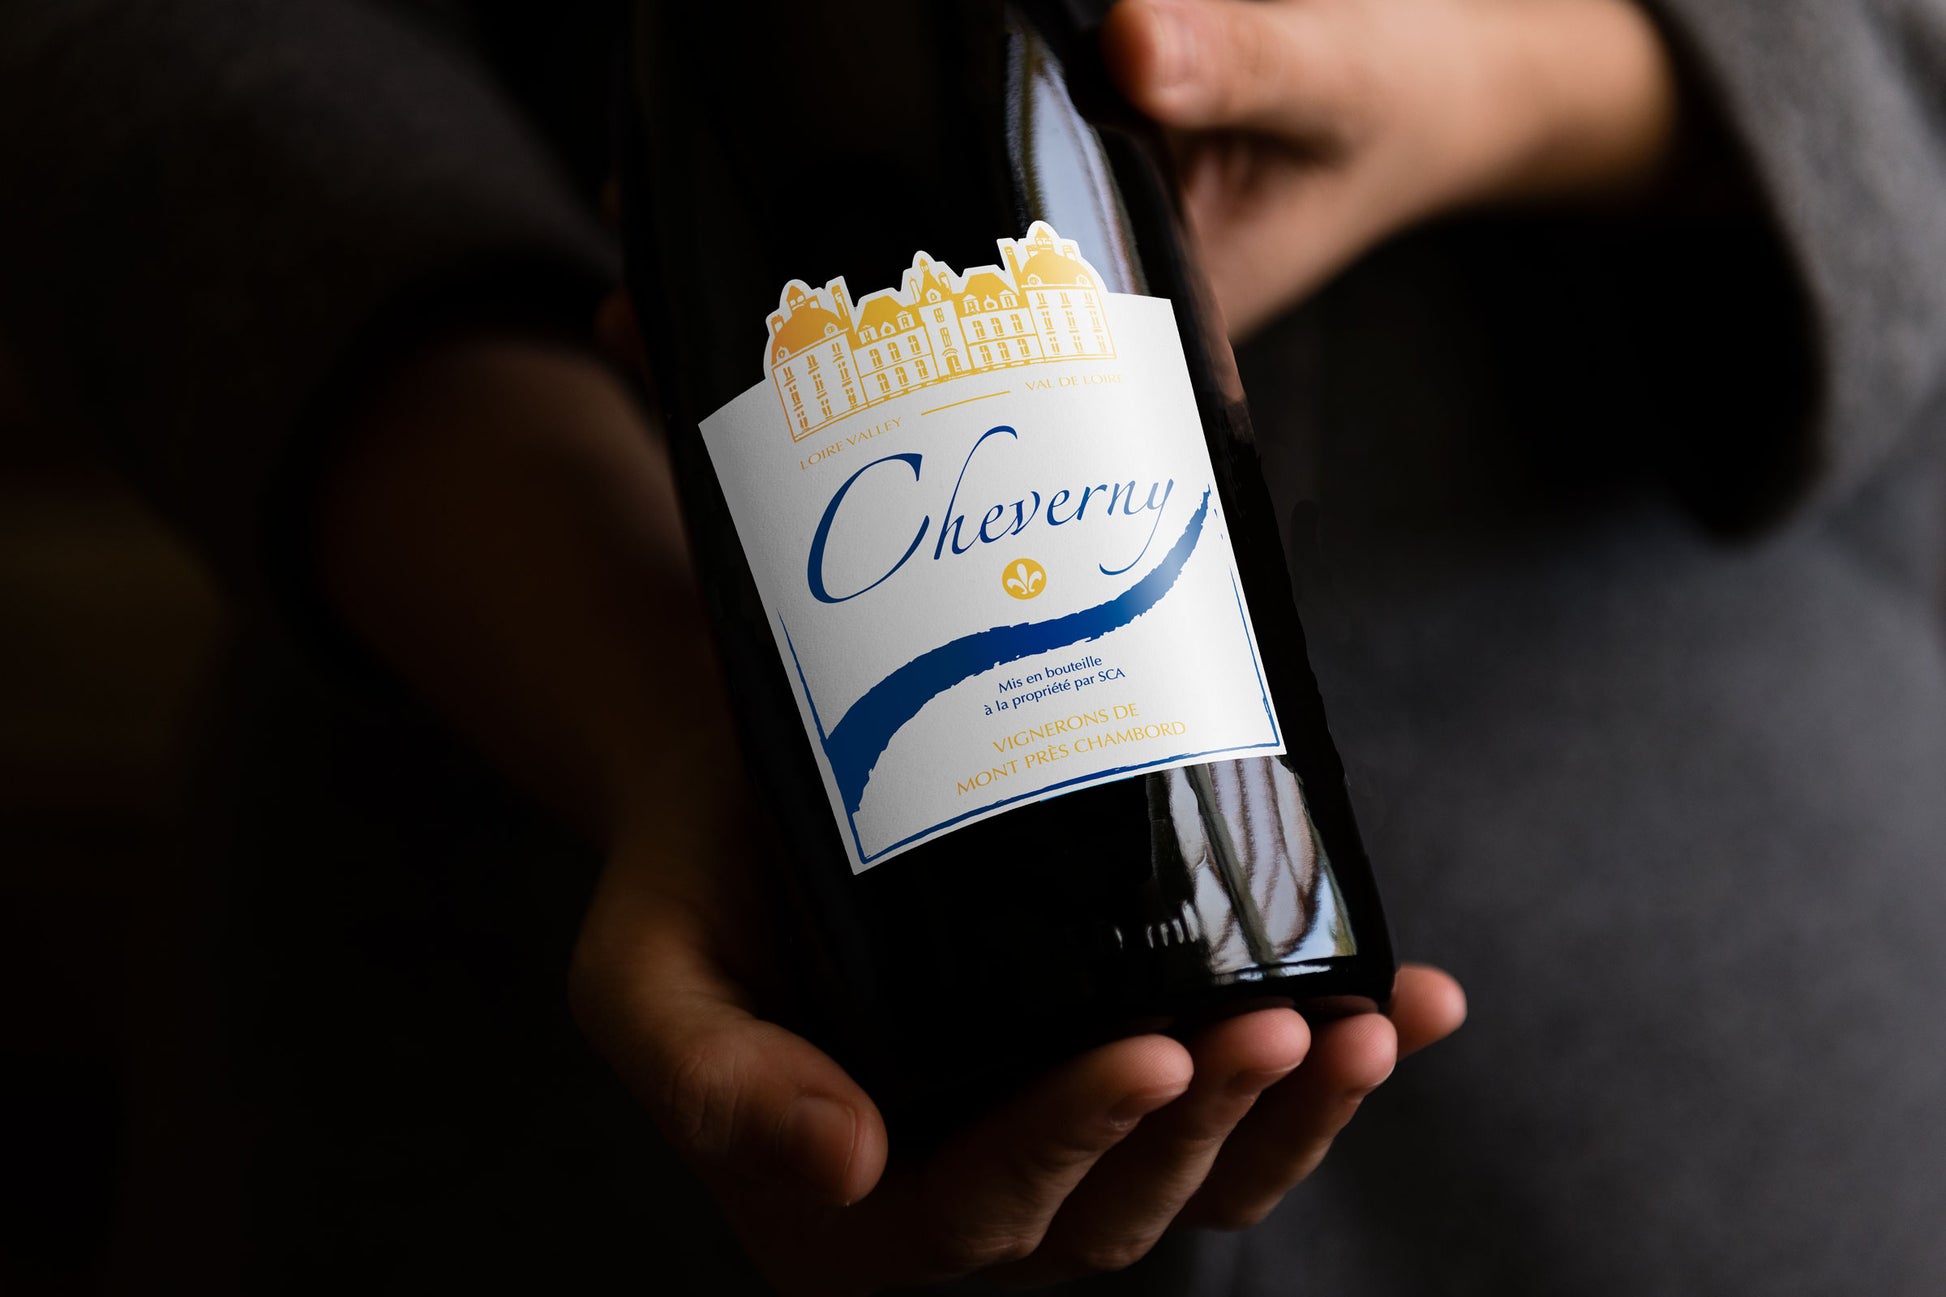 Bouteille de vin AOC Cheverny Rouge "Classique" - En vente sur la boutique en ligne de La Cave Coopérative des Vignerons de Mont-Près-Chambord